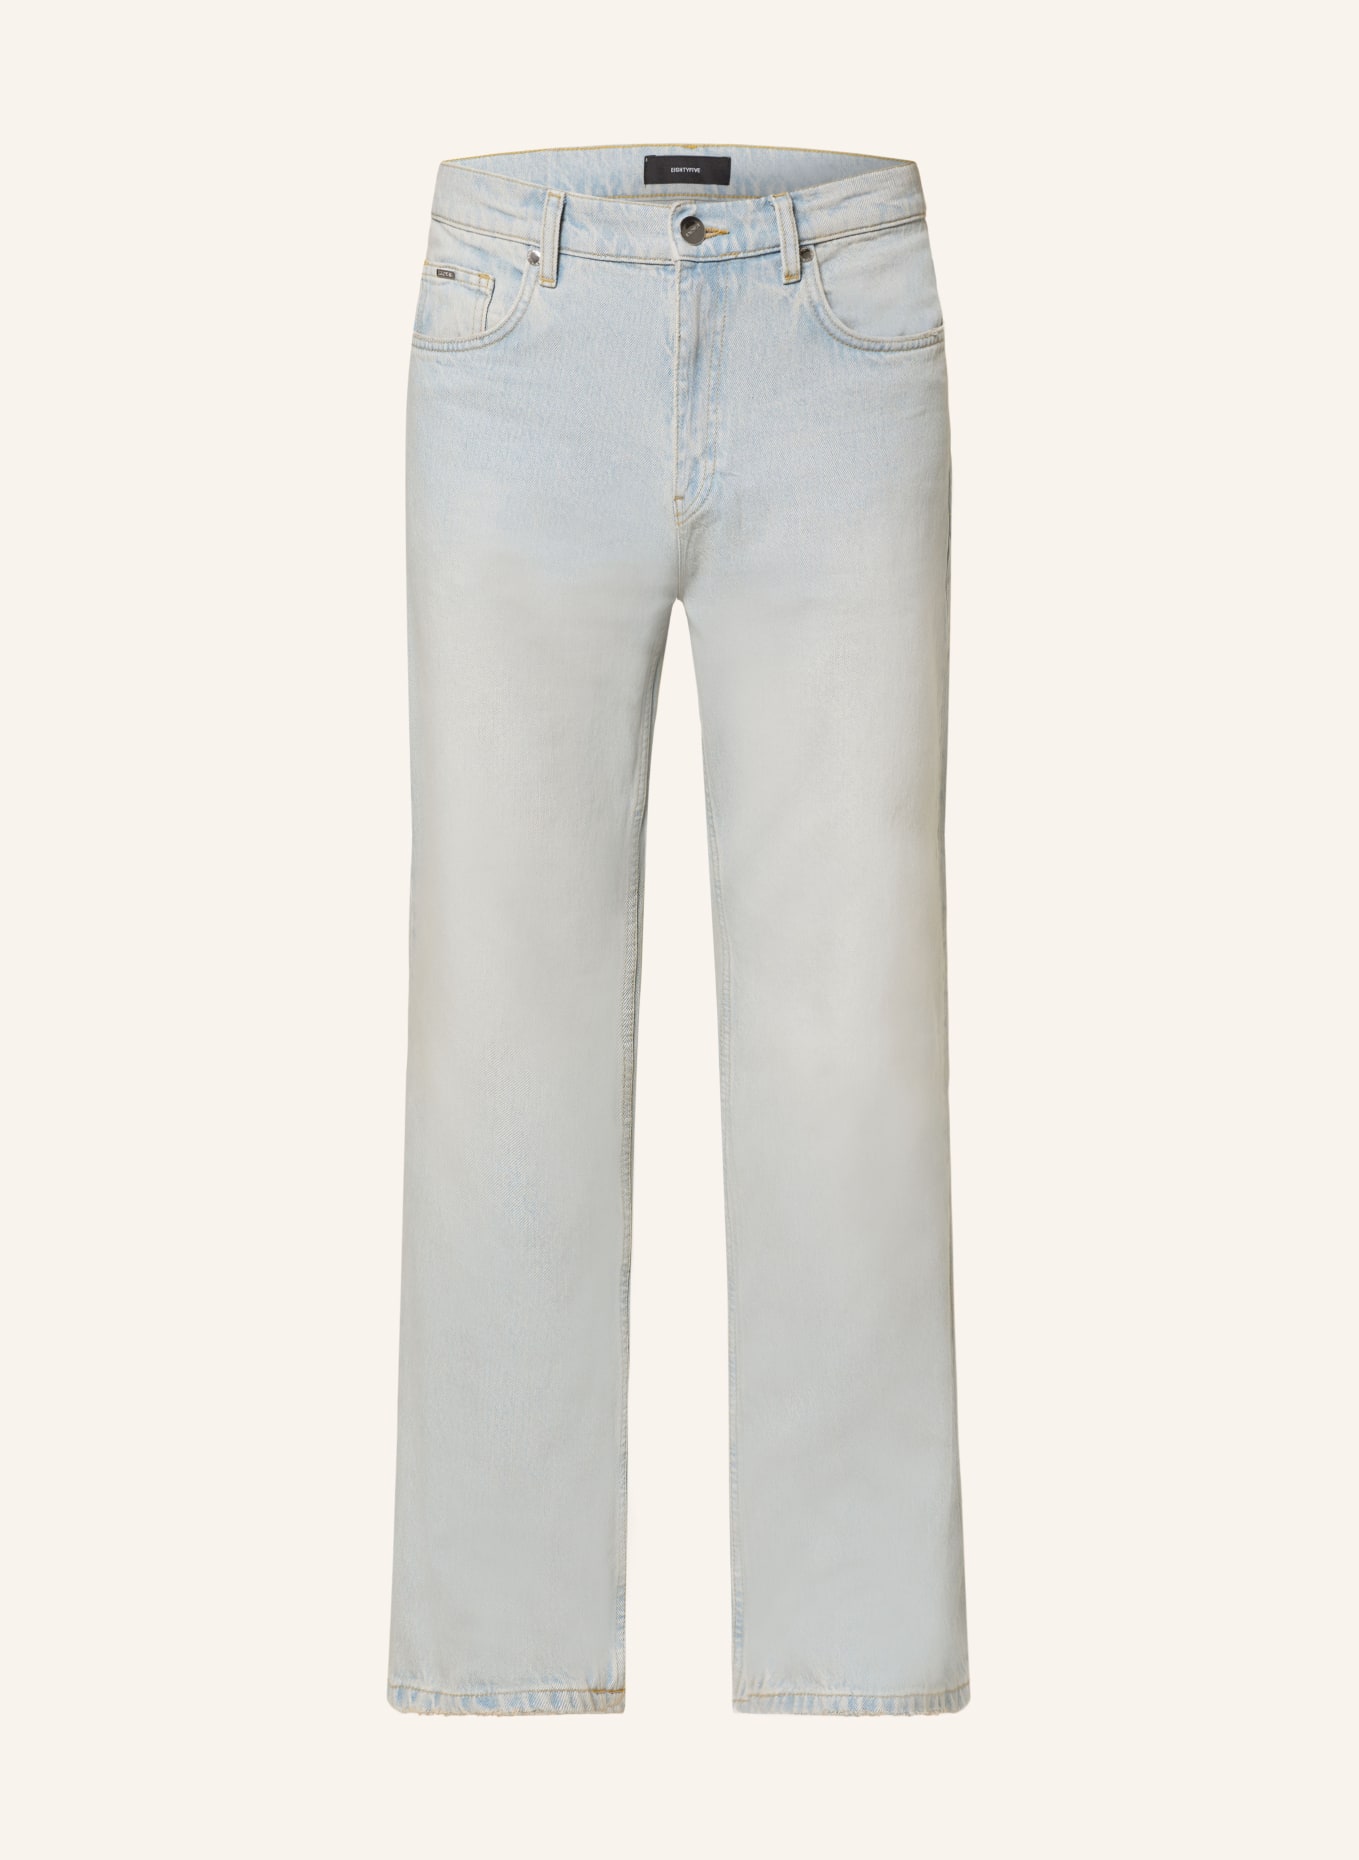 EIGHTYFIVE Jeans Straight Fit, Farbe: desert blue (Bild 1)